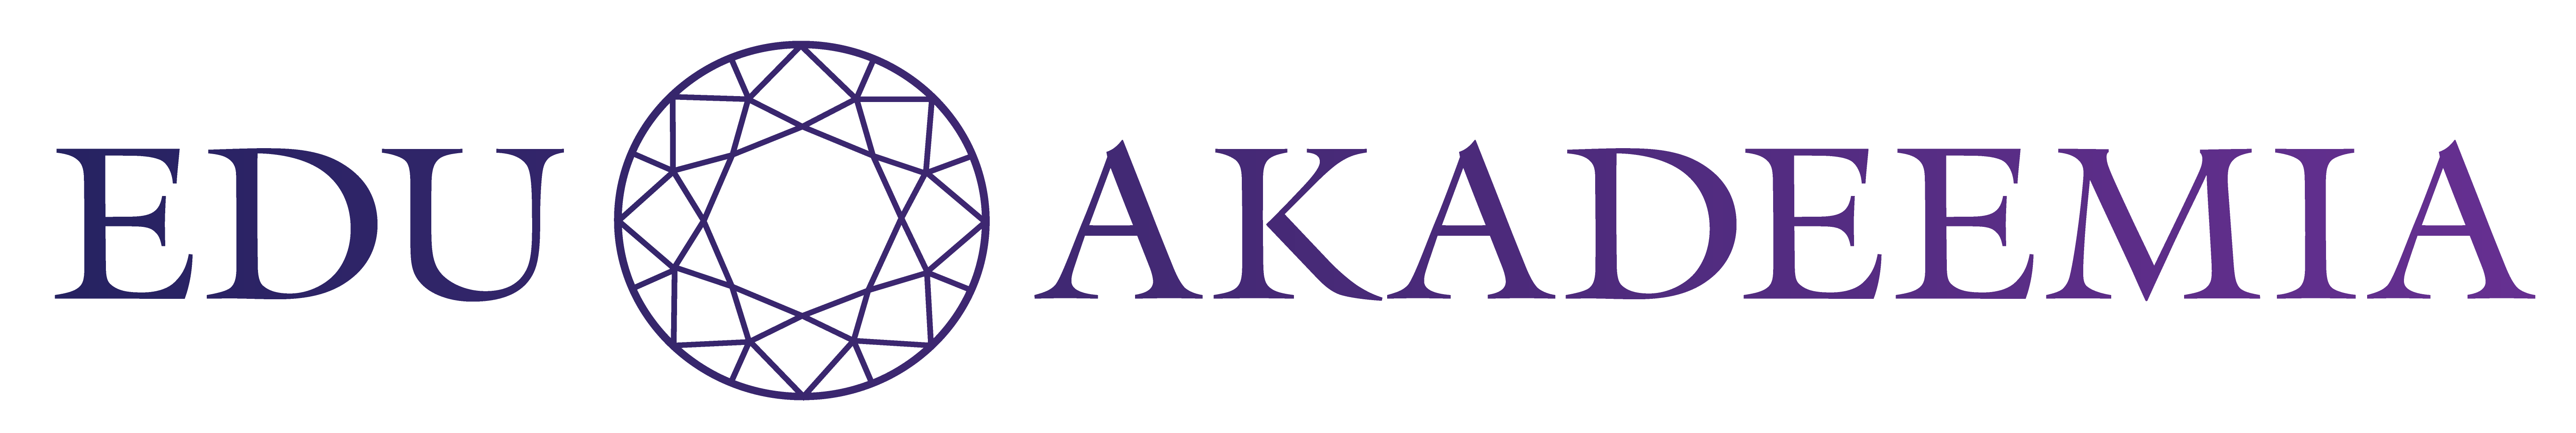 Edu Akademia logo